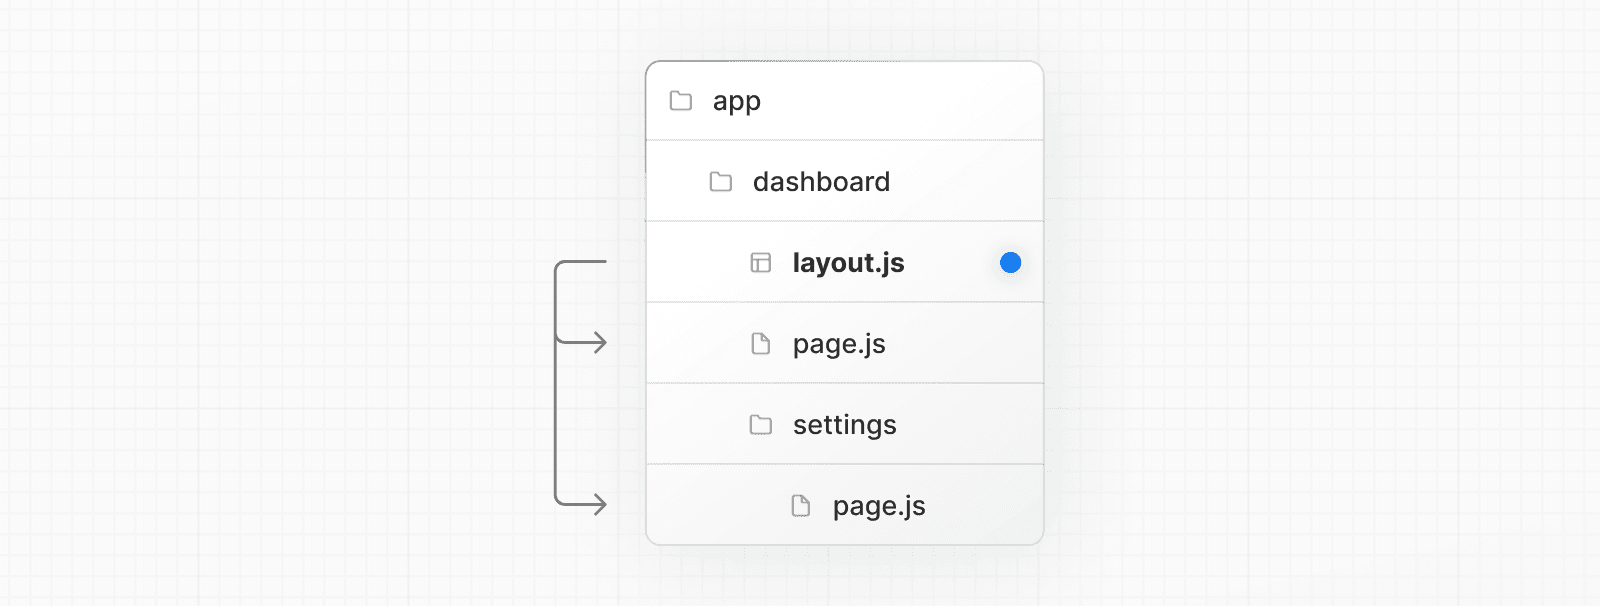 layout.js 특별한 파일